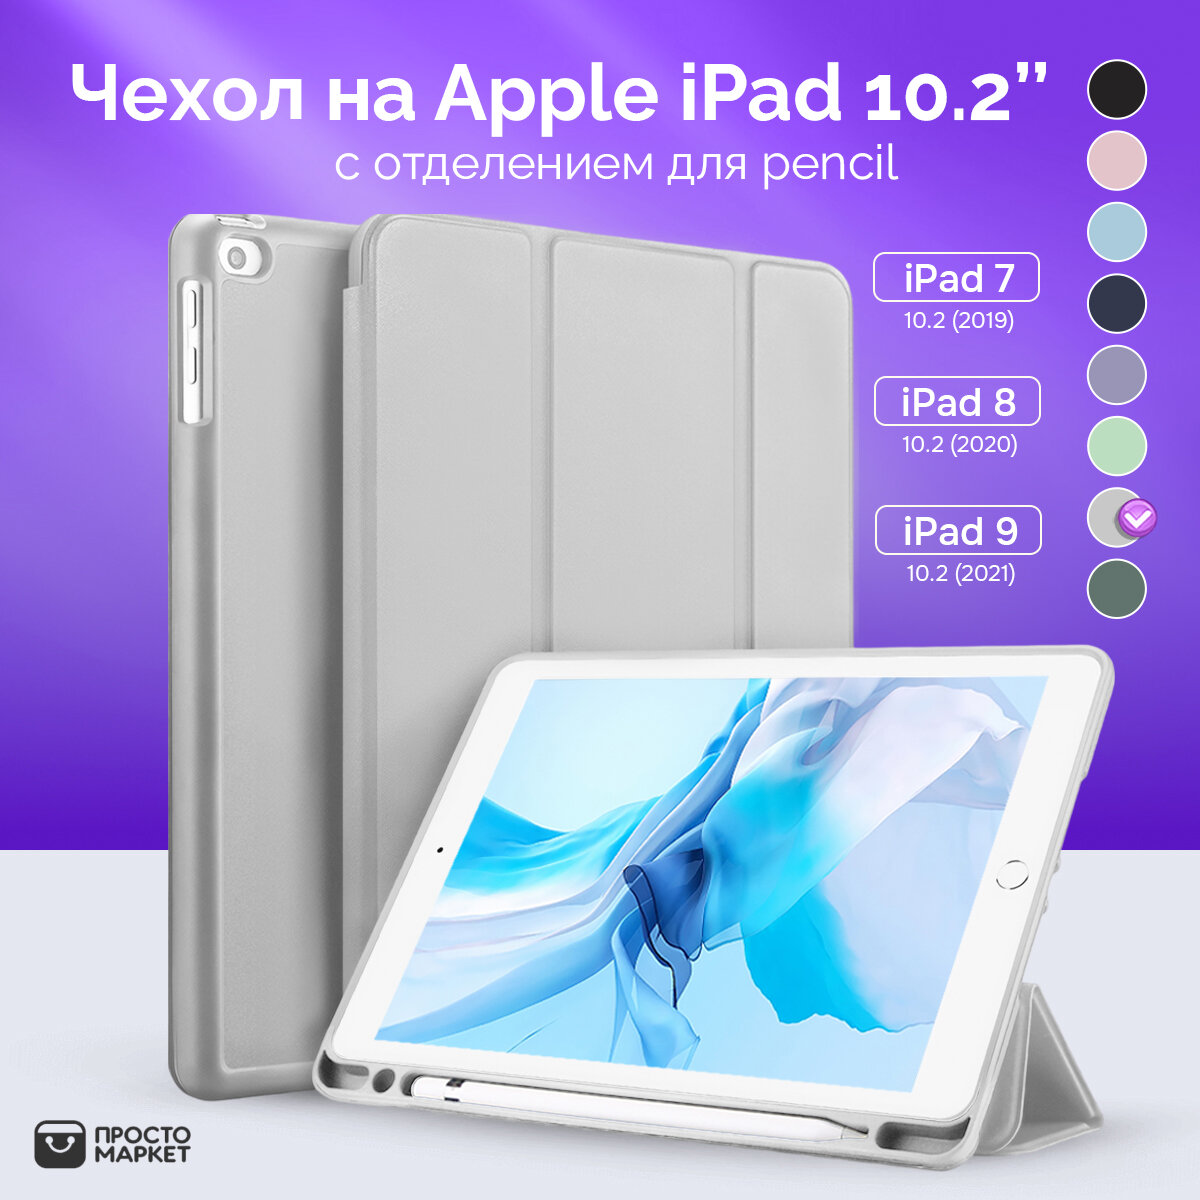 Чехол-обложка для Apple iPad 10.2" (iPad 7/iPad 8/iPad 9) серый/Чехол для стилуса Apple Pencil/ Чехол с подставкой/Обложка Smart Cover iPad 10.2